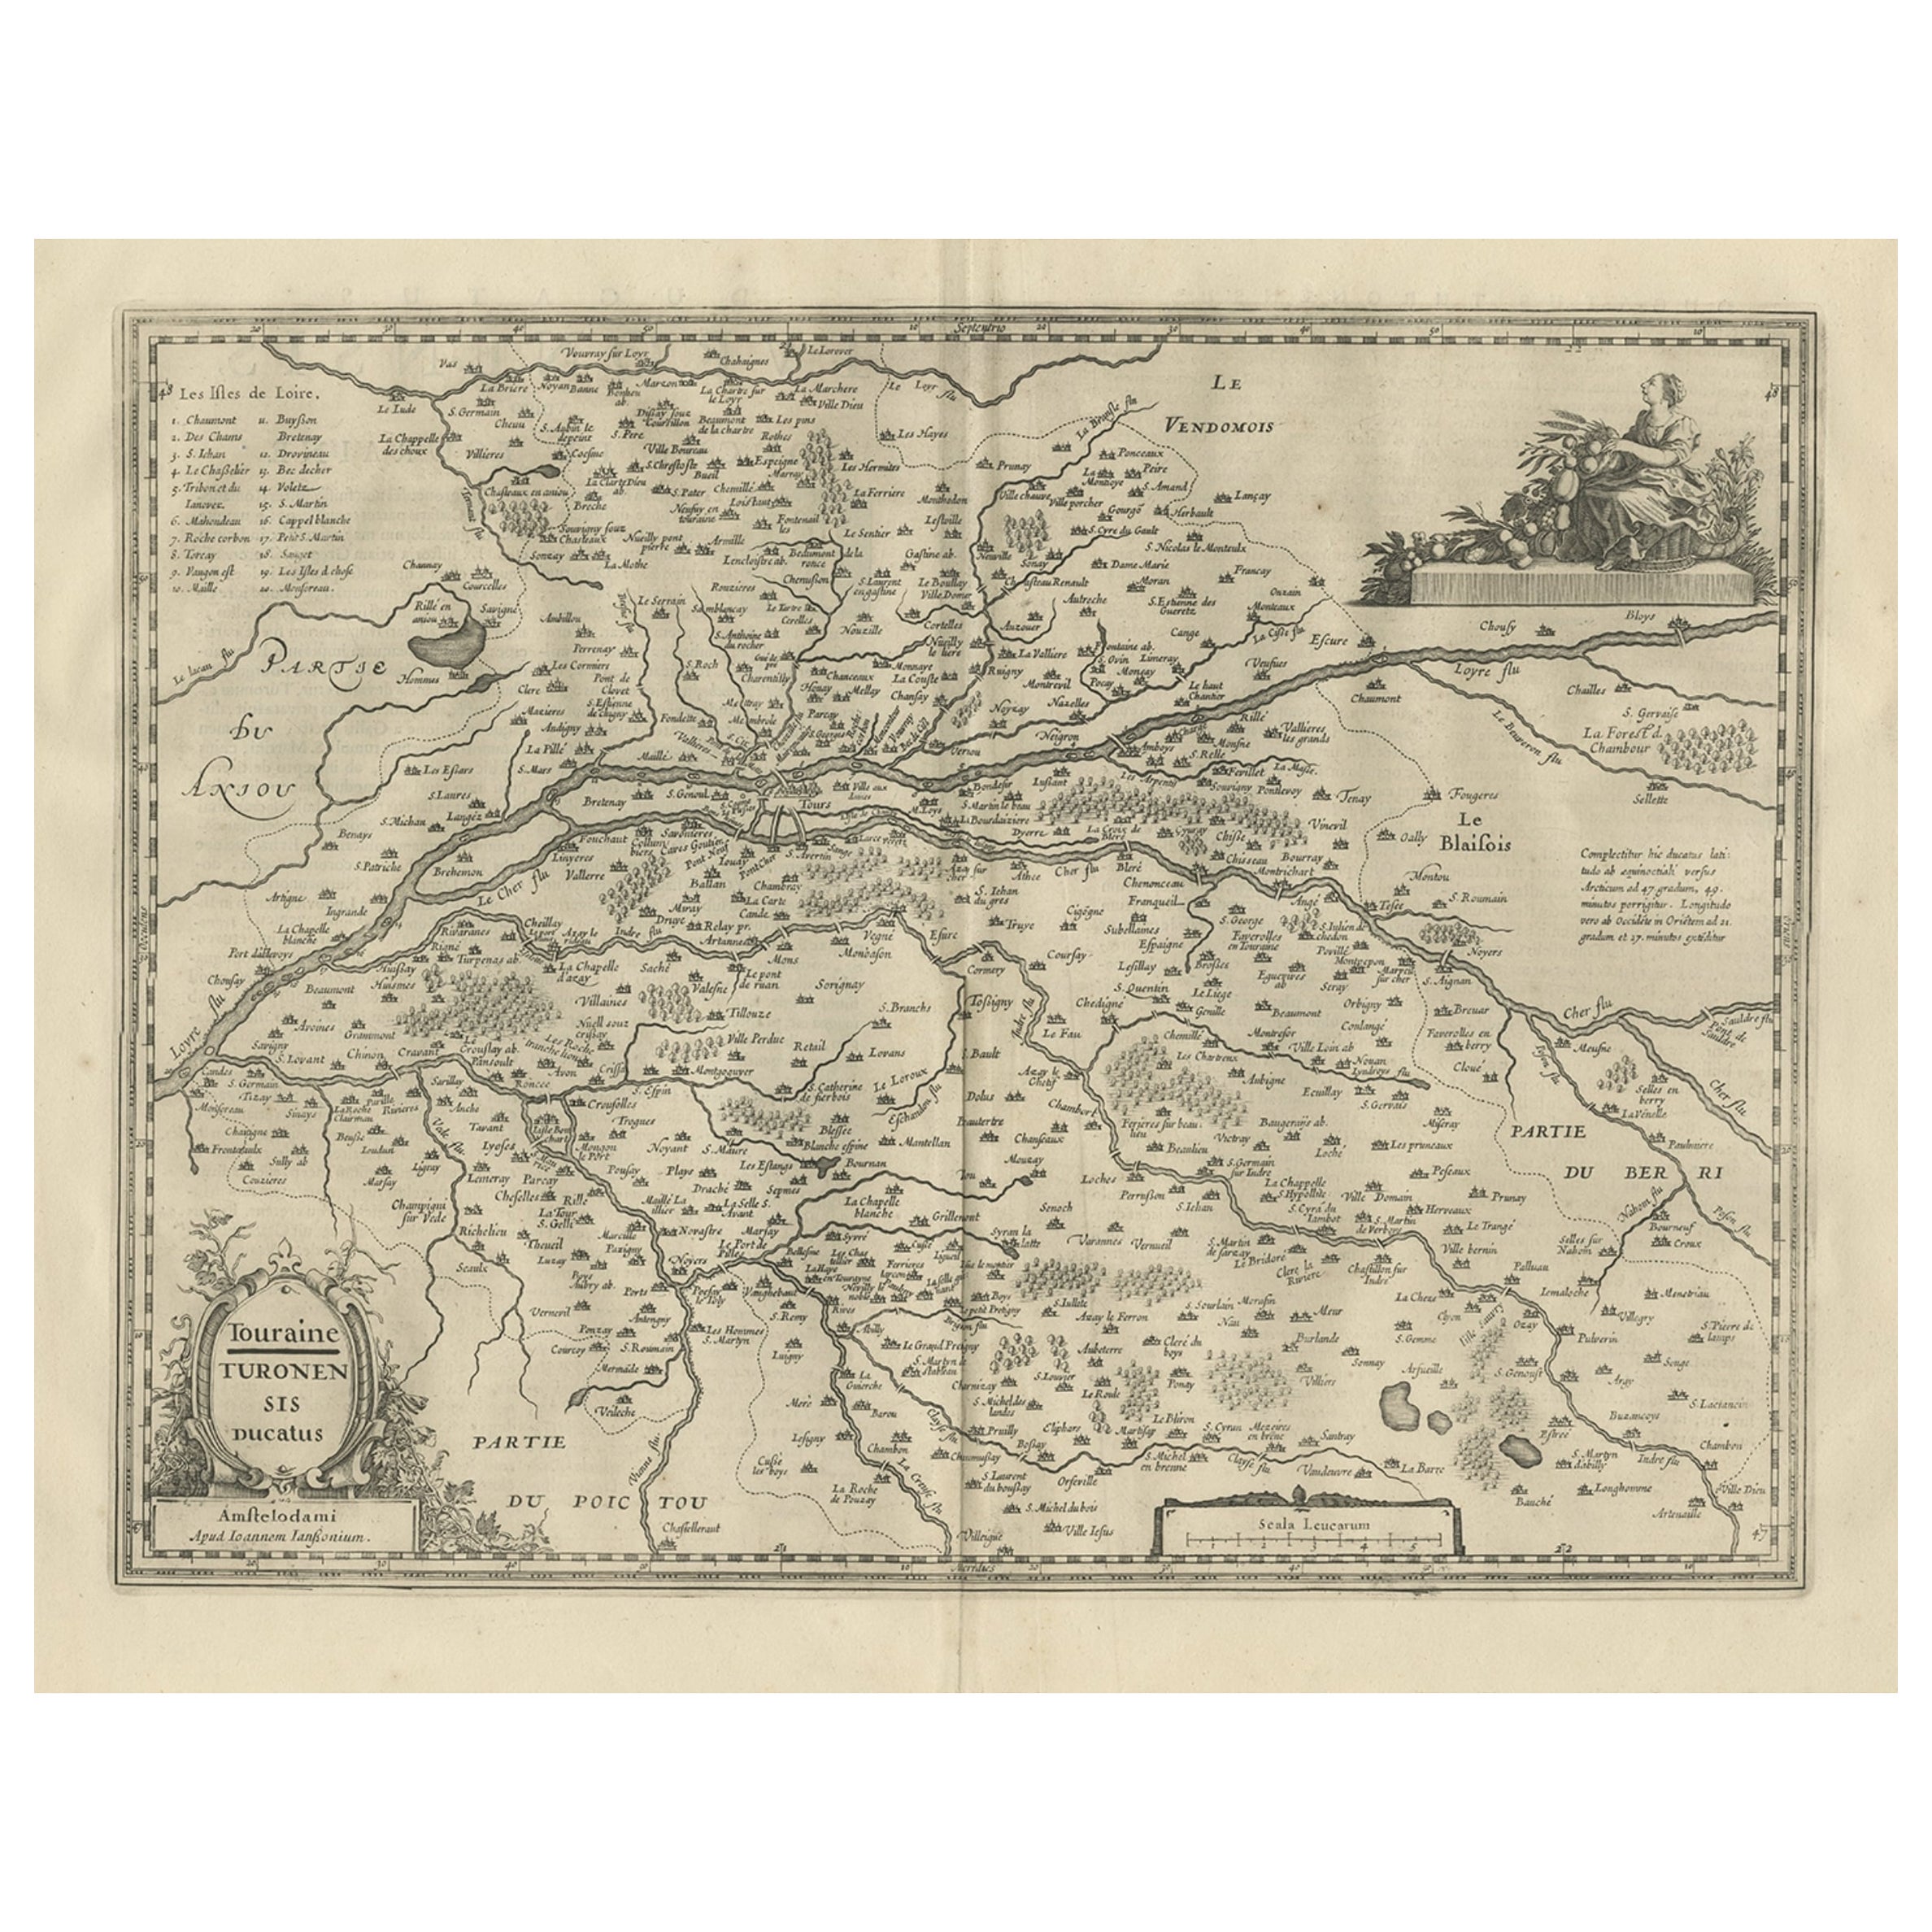 Antike Karte der Region Touraine, Frankreich, von Janssonius, 1657